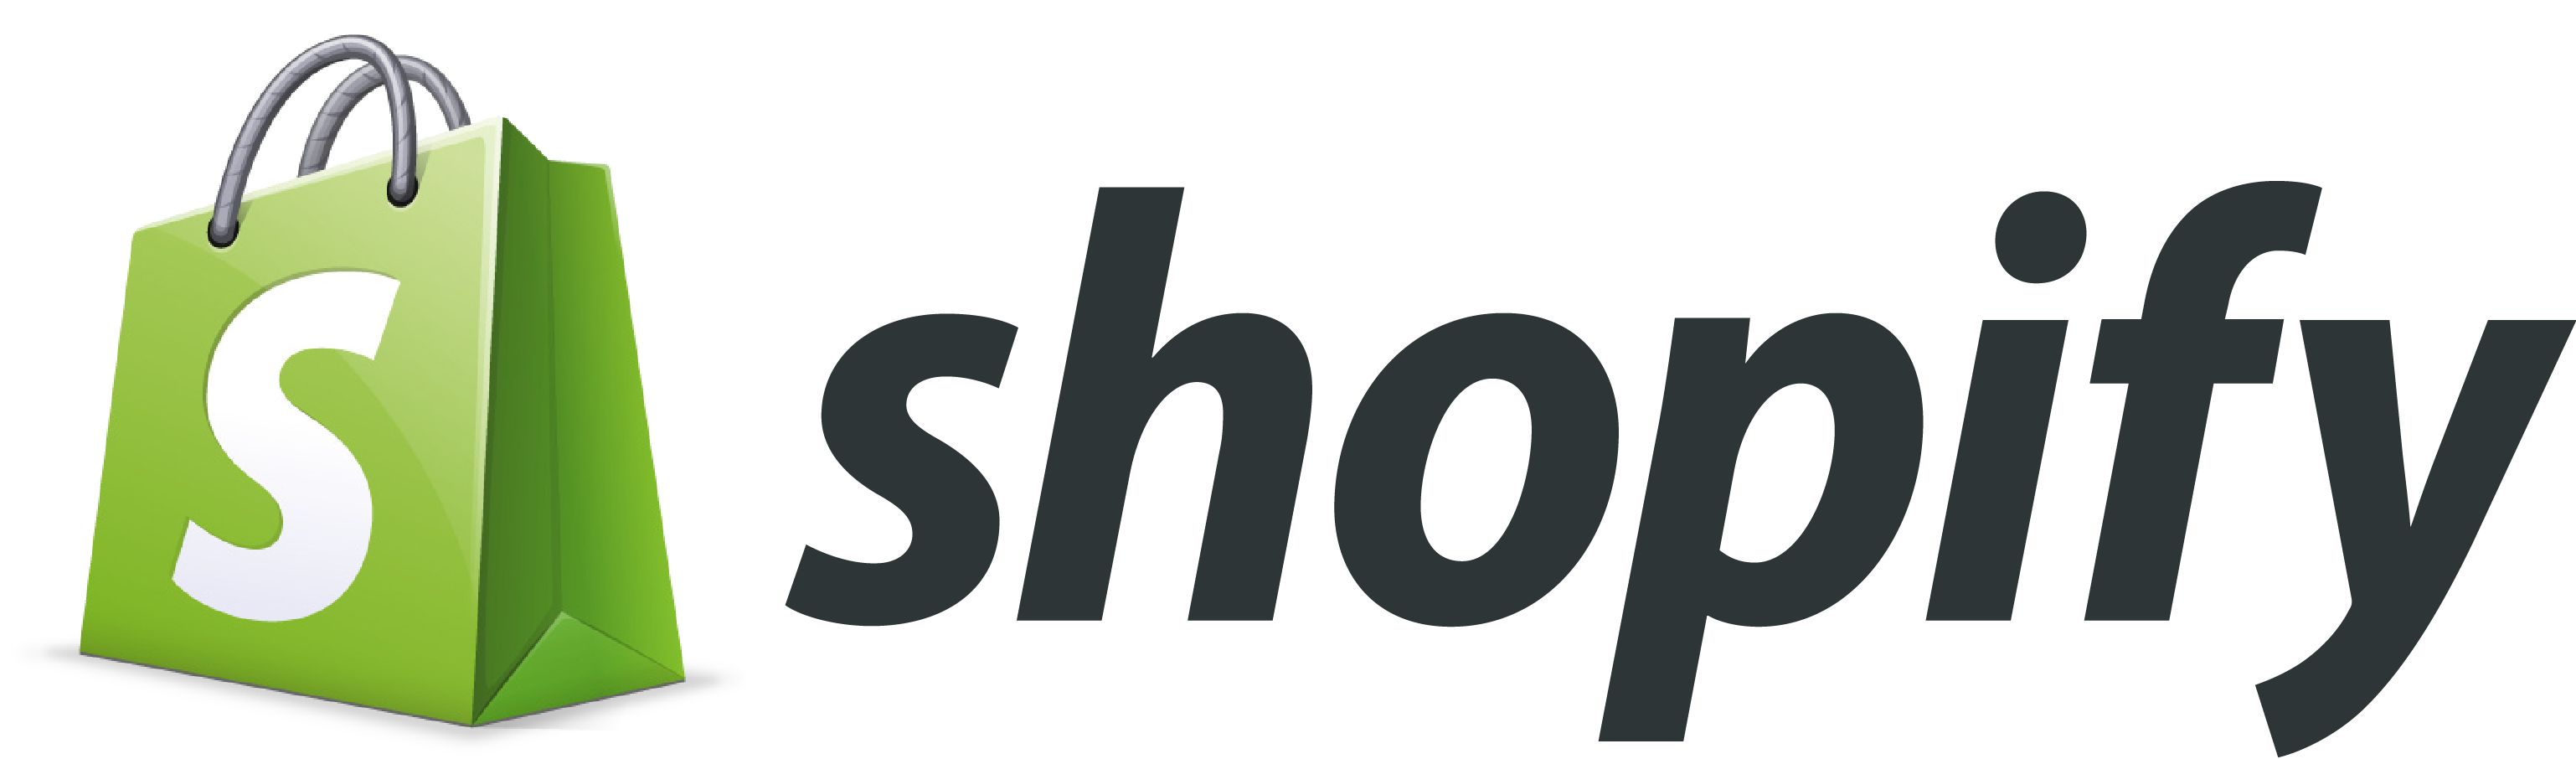 shopify-logo-png-shopify-logo-3076-1